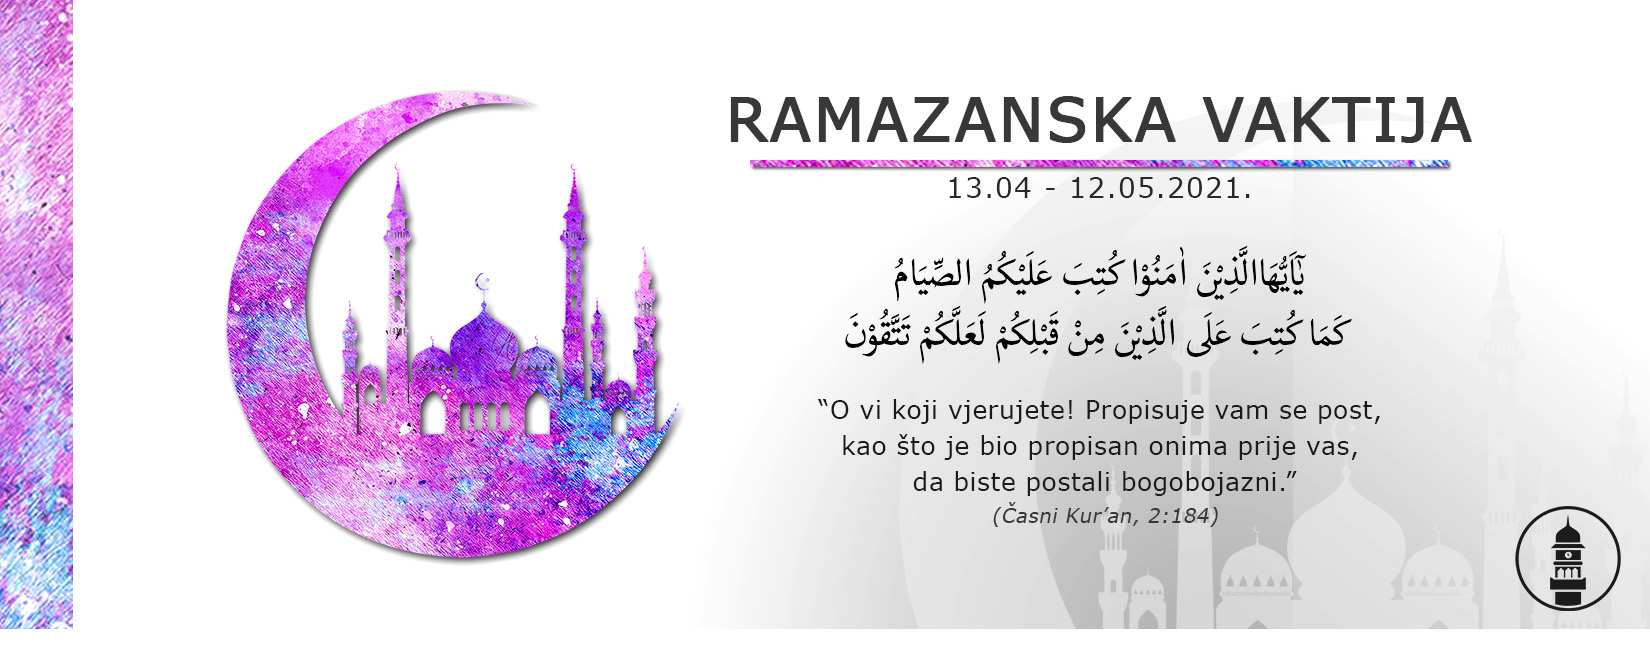 Ramazanska Vaktija - plan ramazana